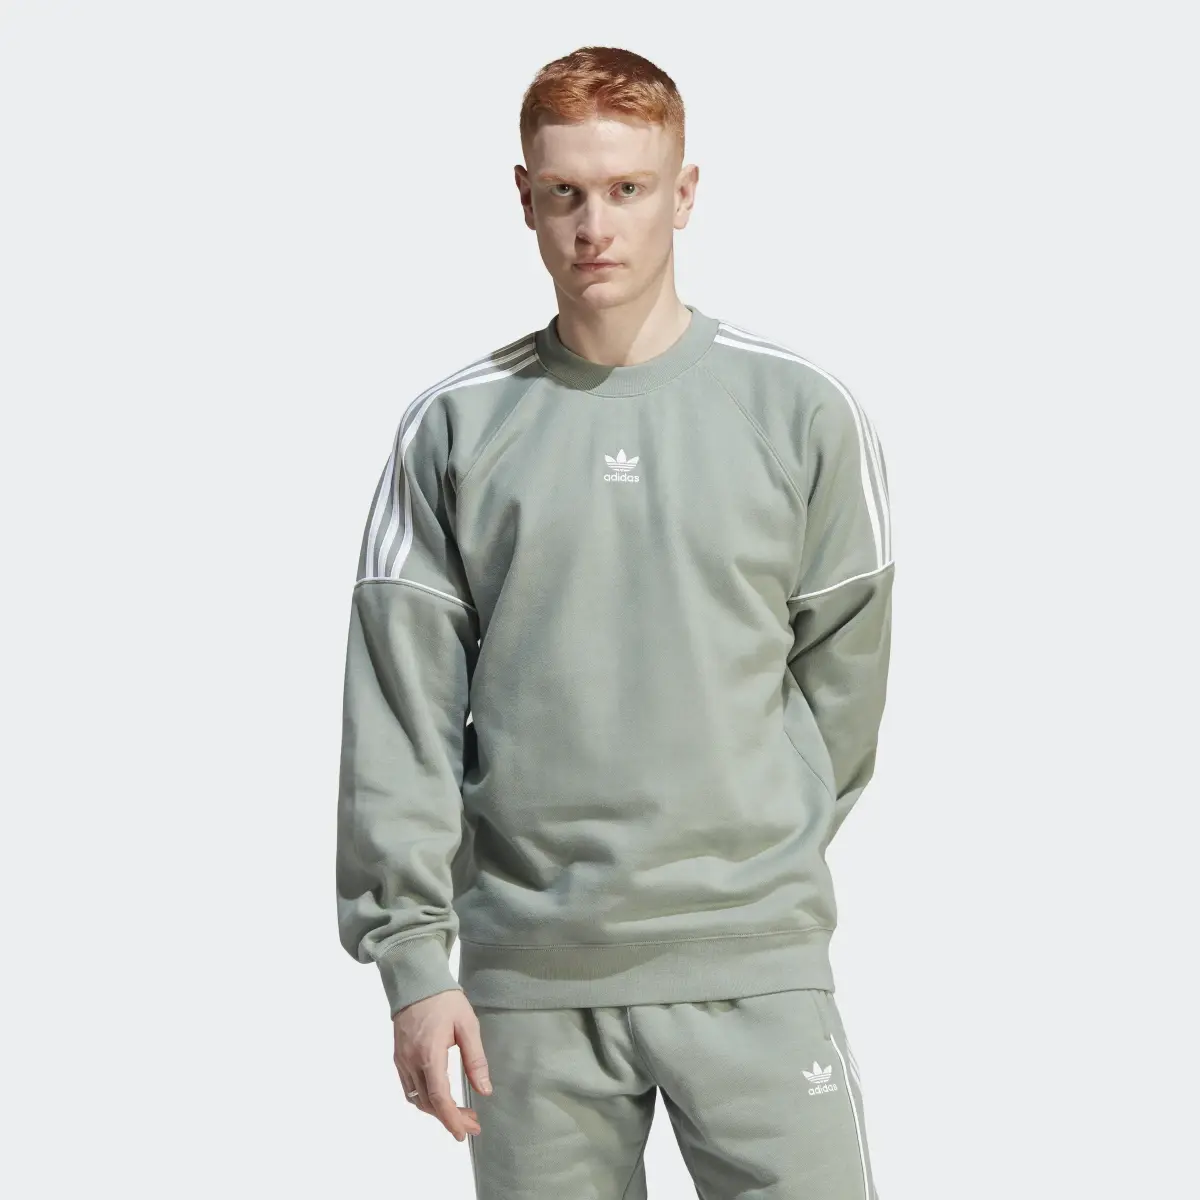 Adidas Rekive Crew Sweatshirt. 2